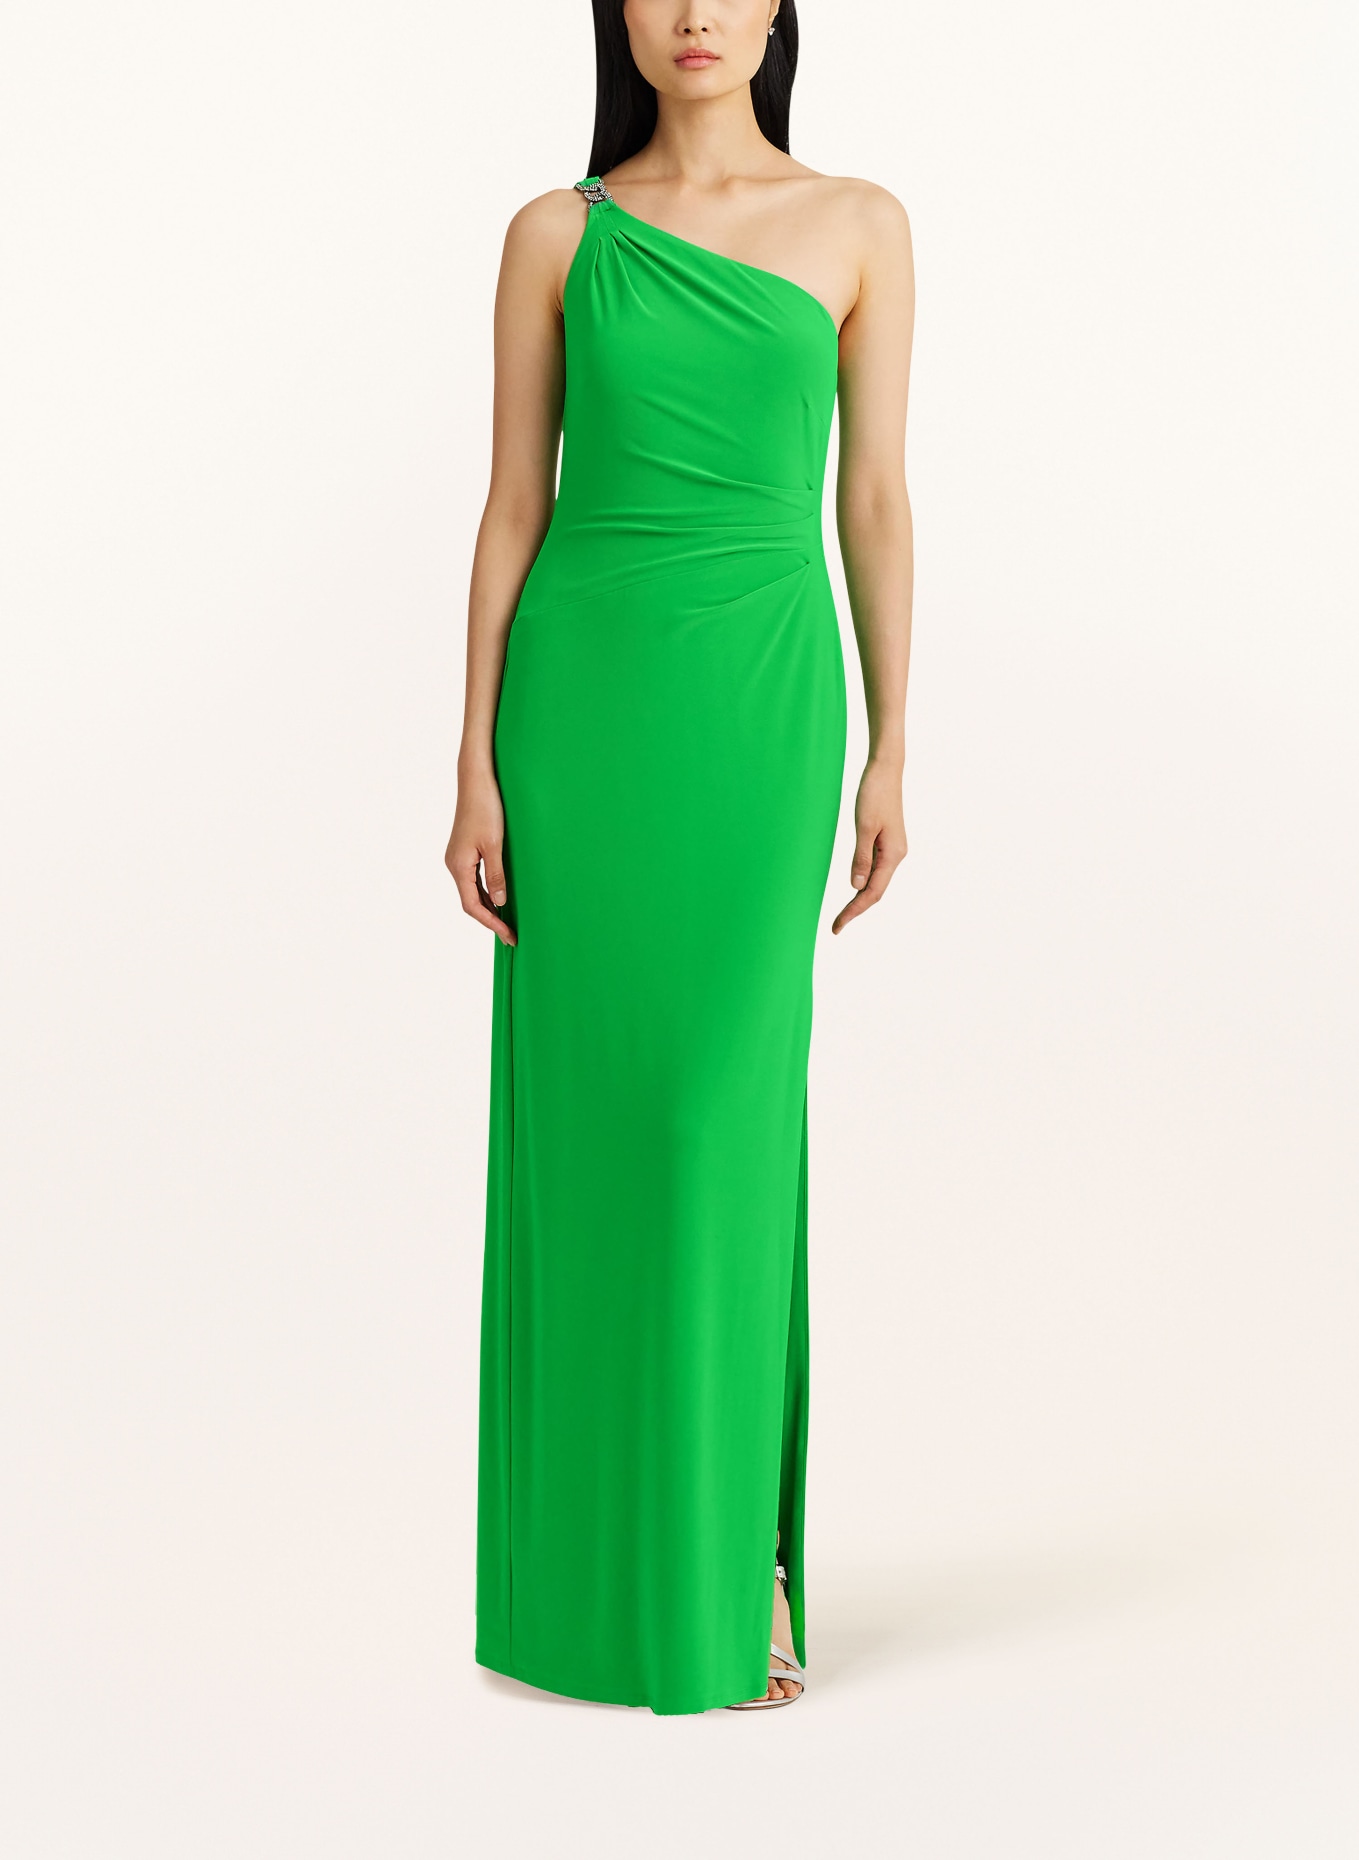 LAUREN RALPH LAUREN One-shoulder dress, Color: GREEN (Image 2)